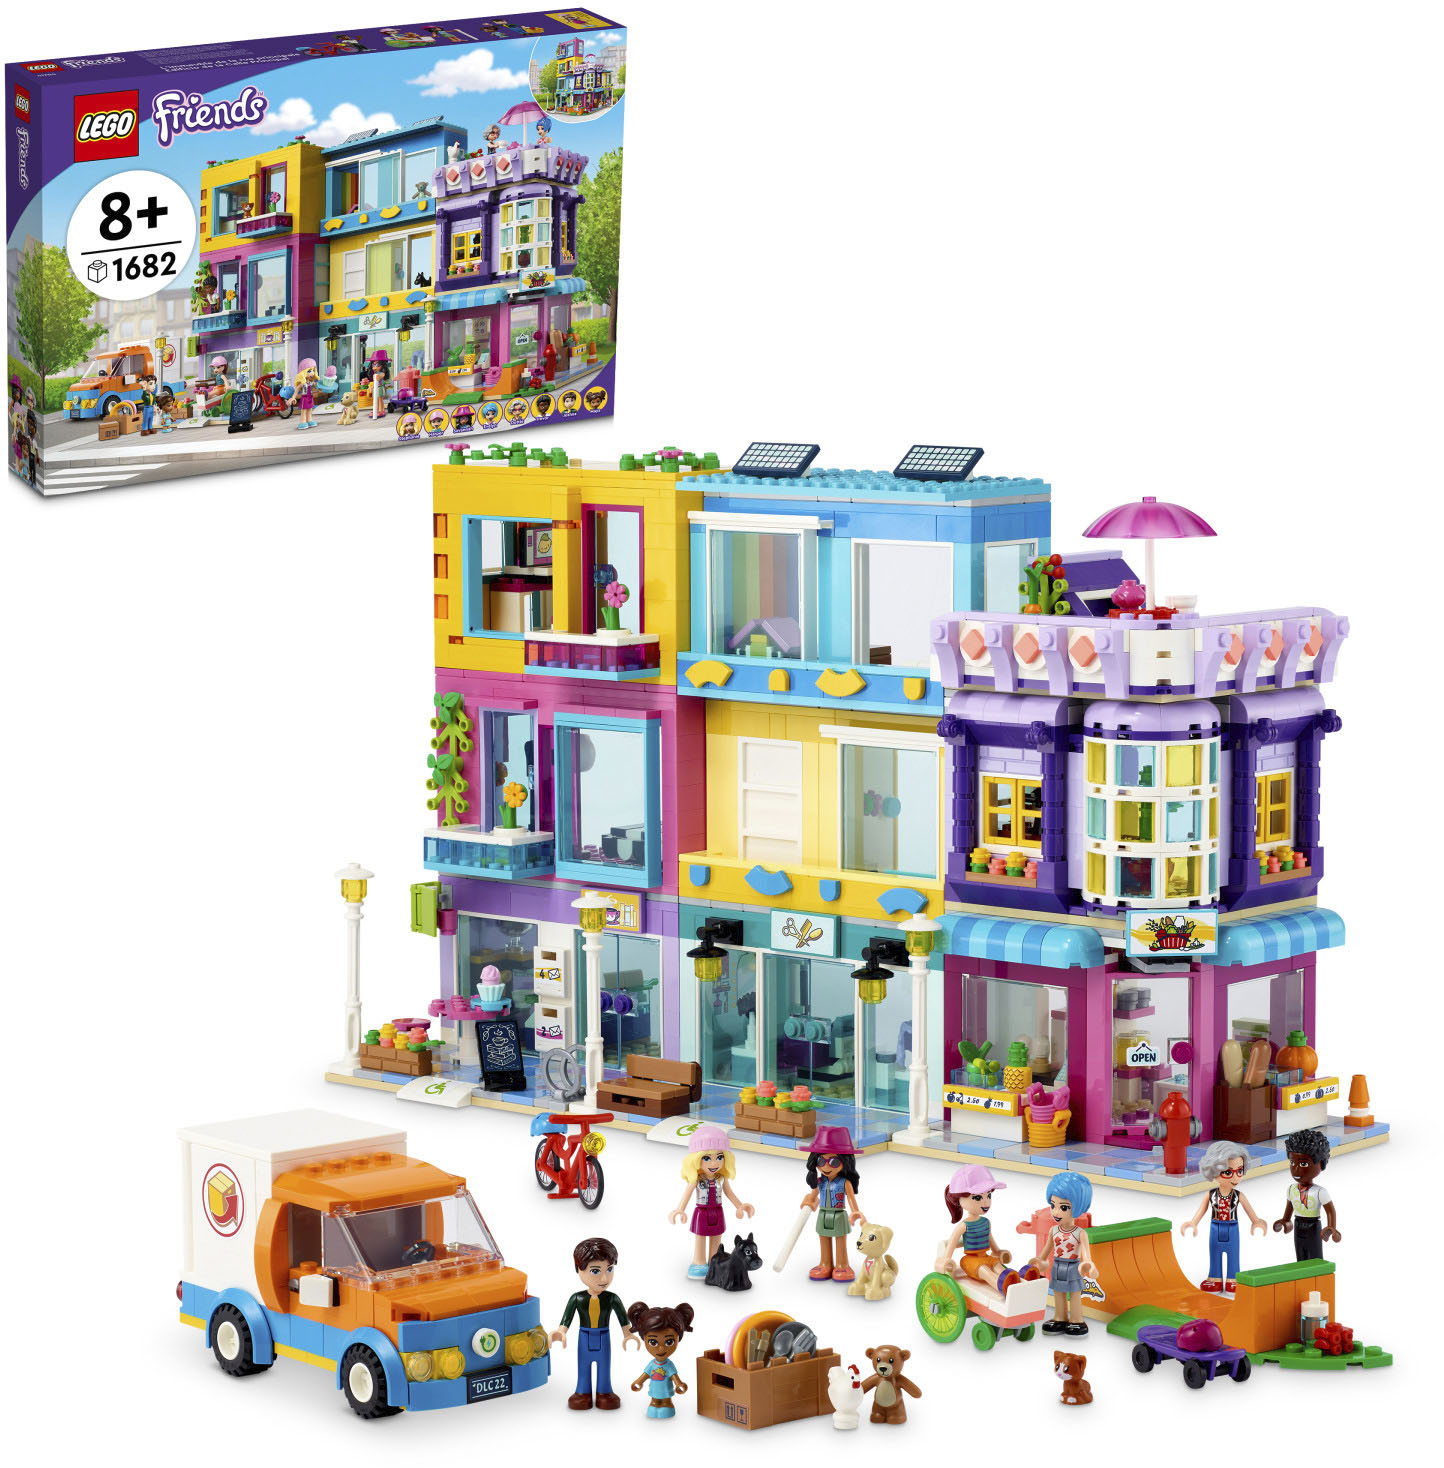 LEGO Friends Street Building 6379084 - Best Buy